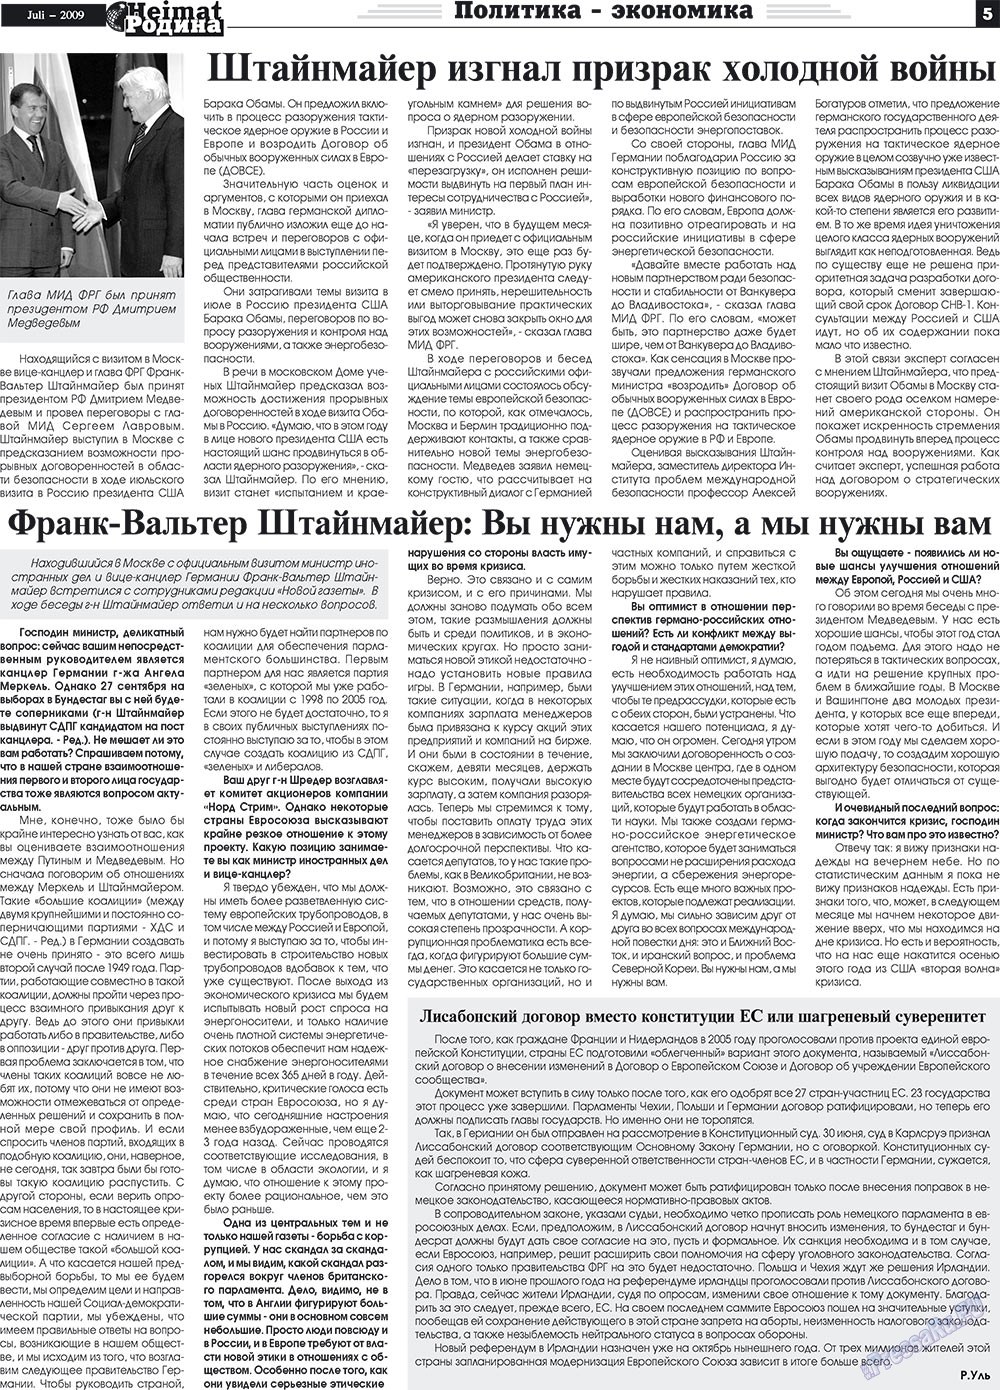 Heimat-Родина (газета). 2009 год, номер 7, стр. 5